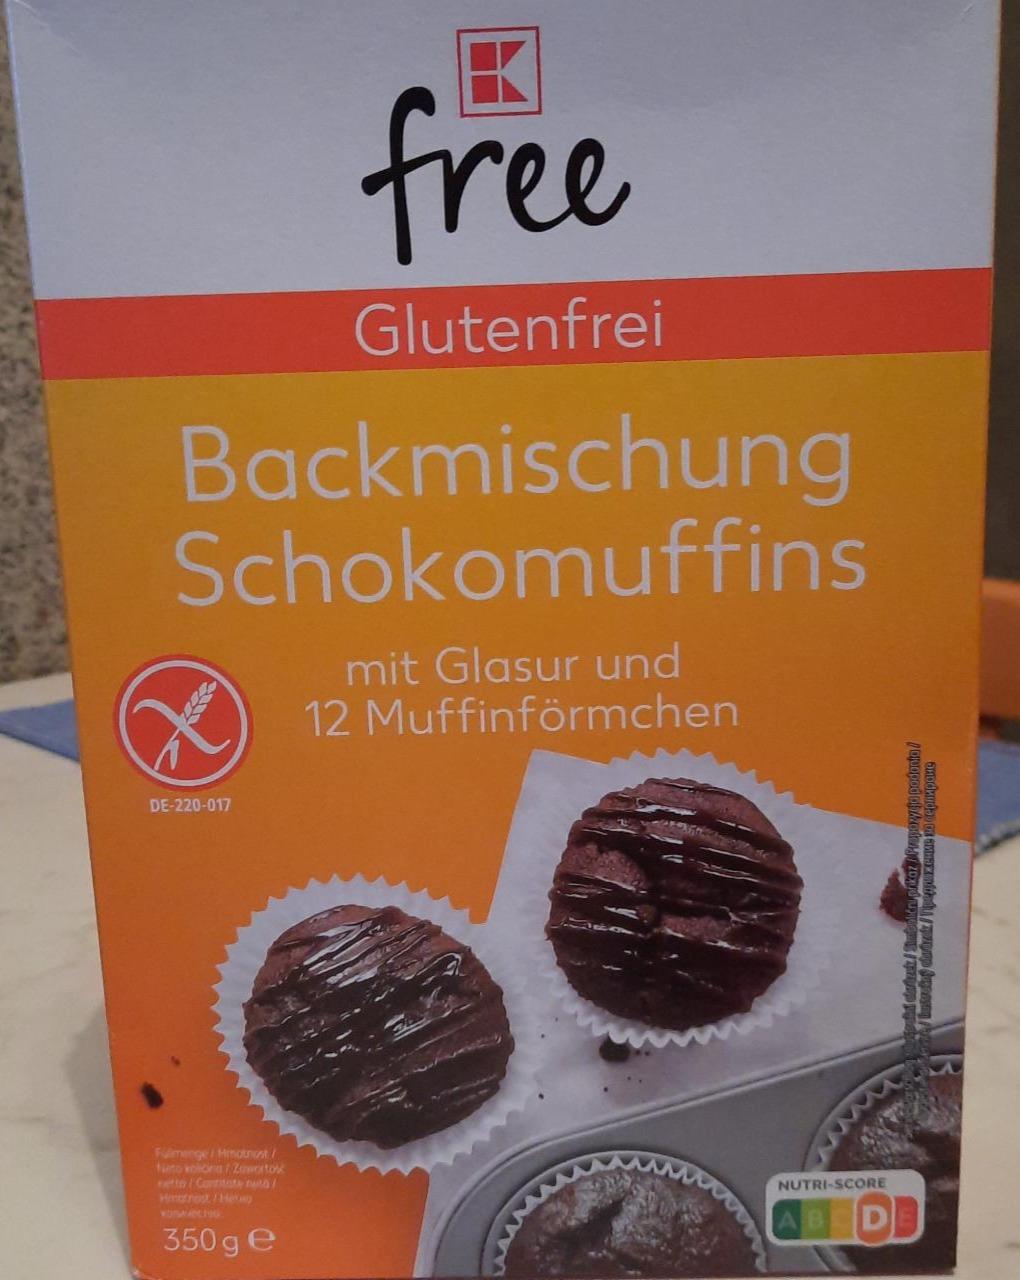 Fotografie - Backmischung Schokomuffins Glutenfrei K-free